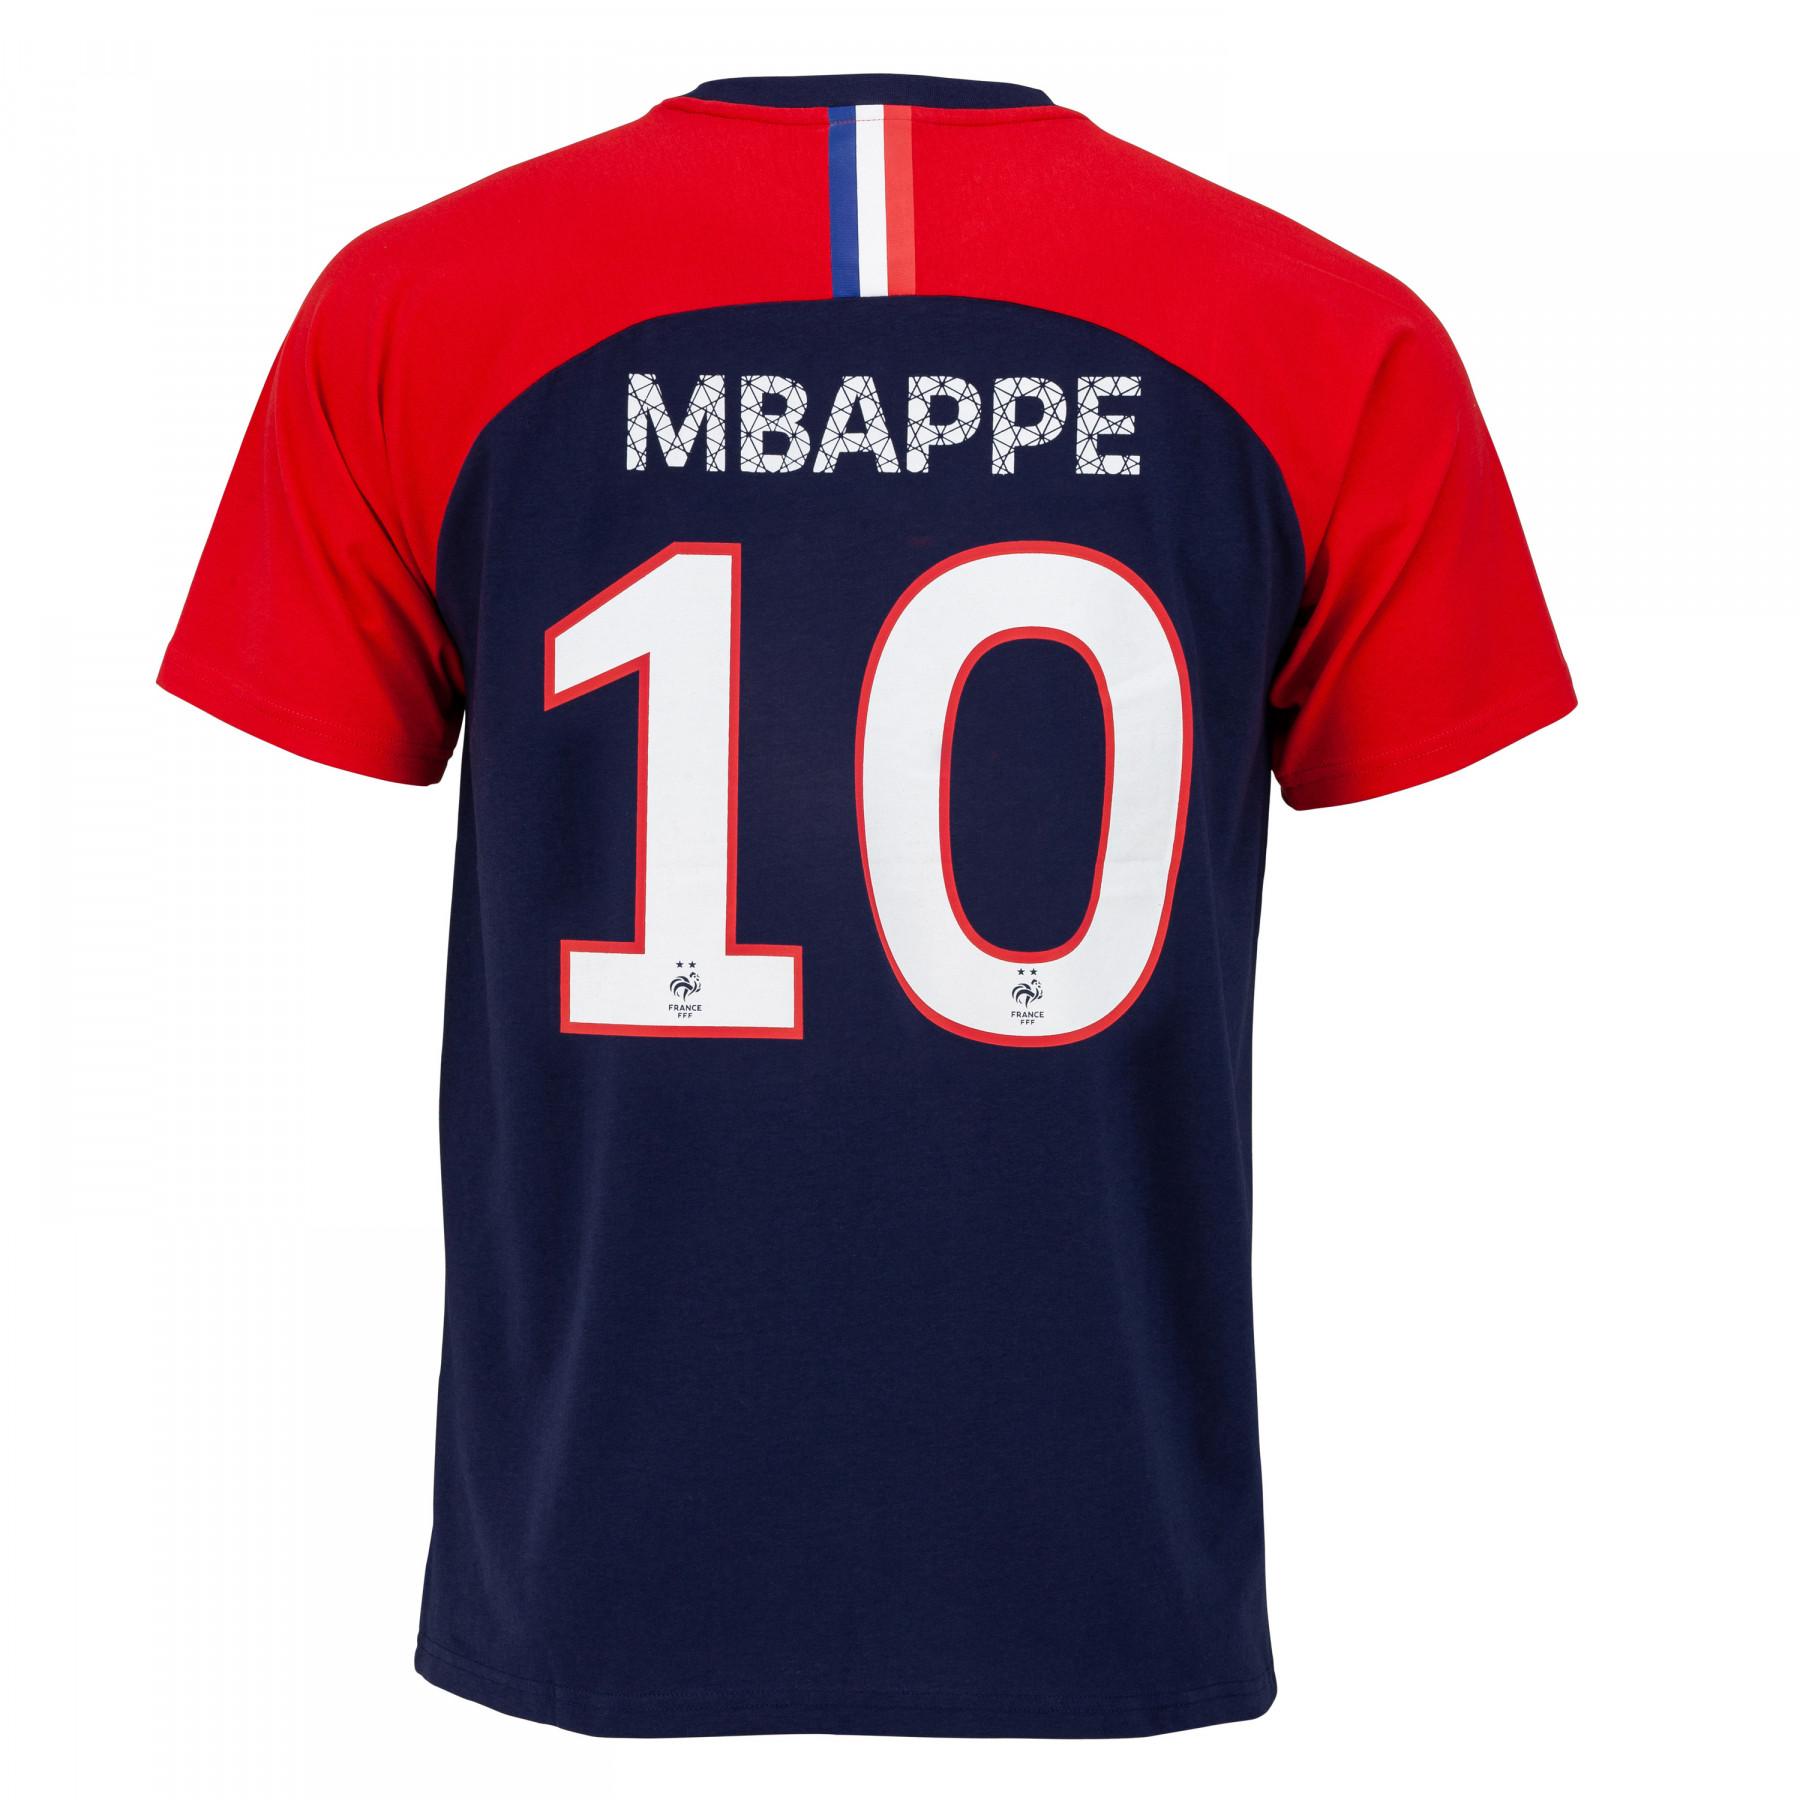 Koszulka dziecięca fff gracz mbappé n°10